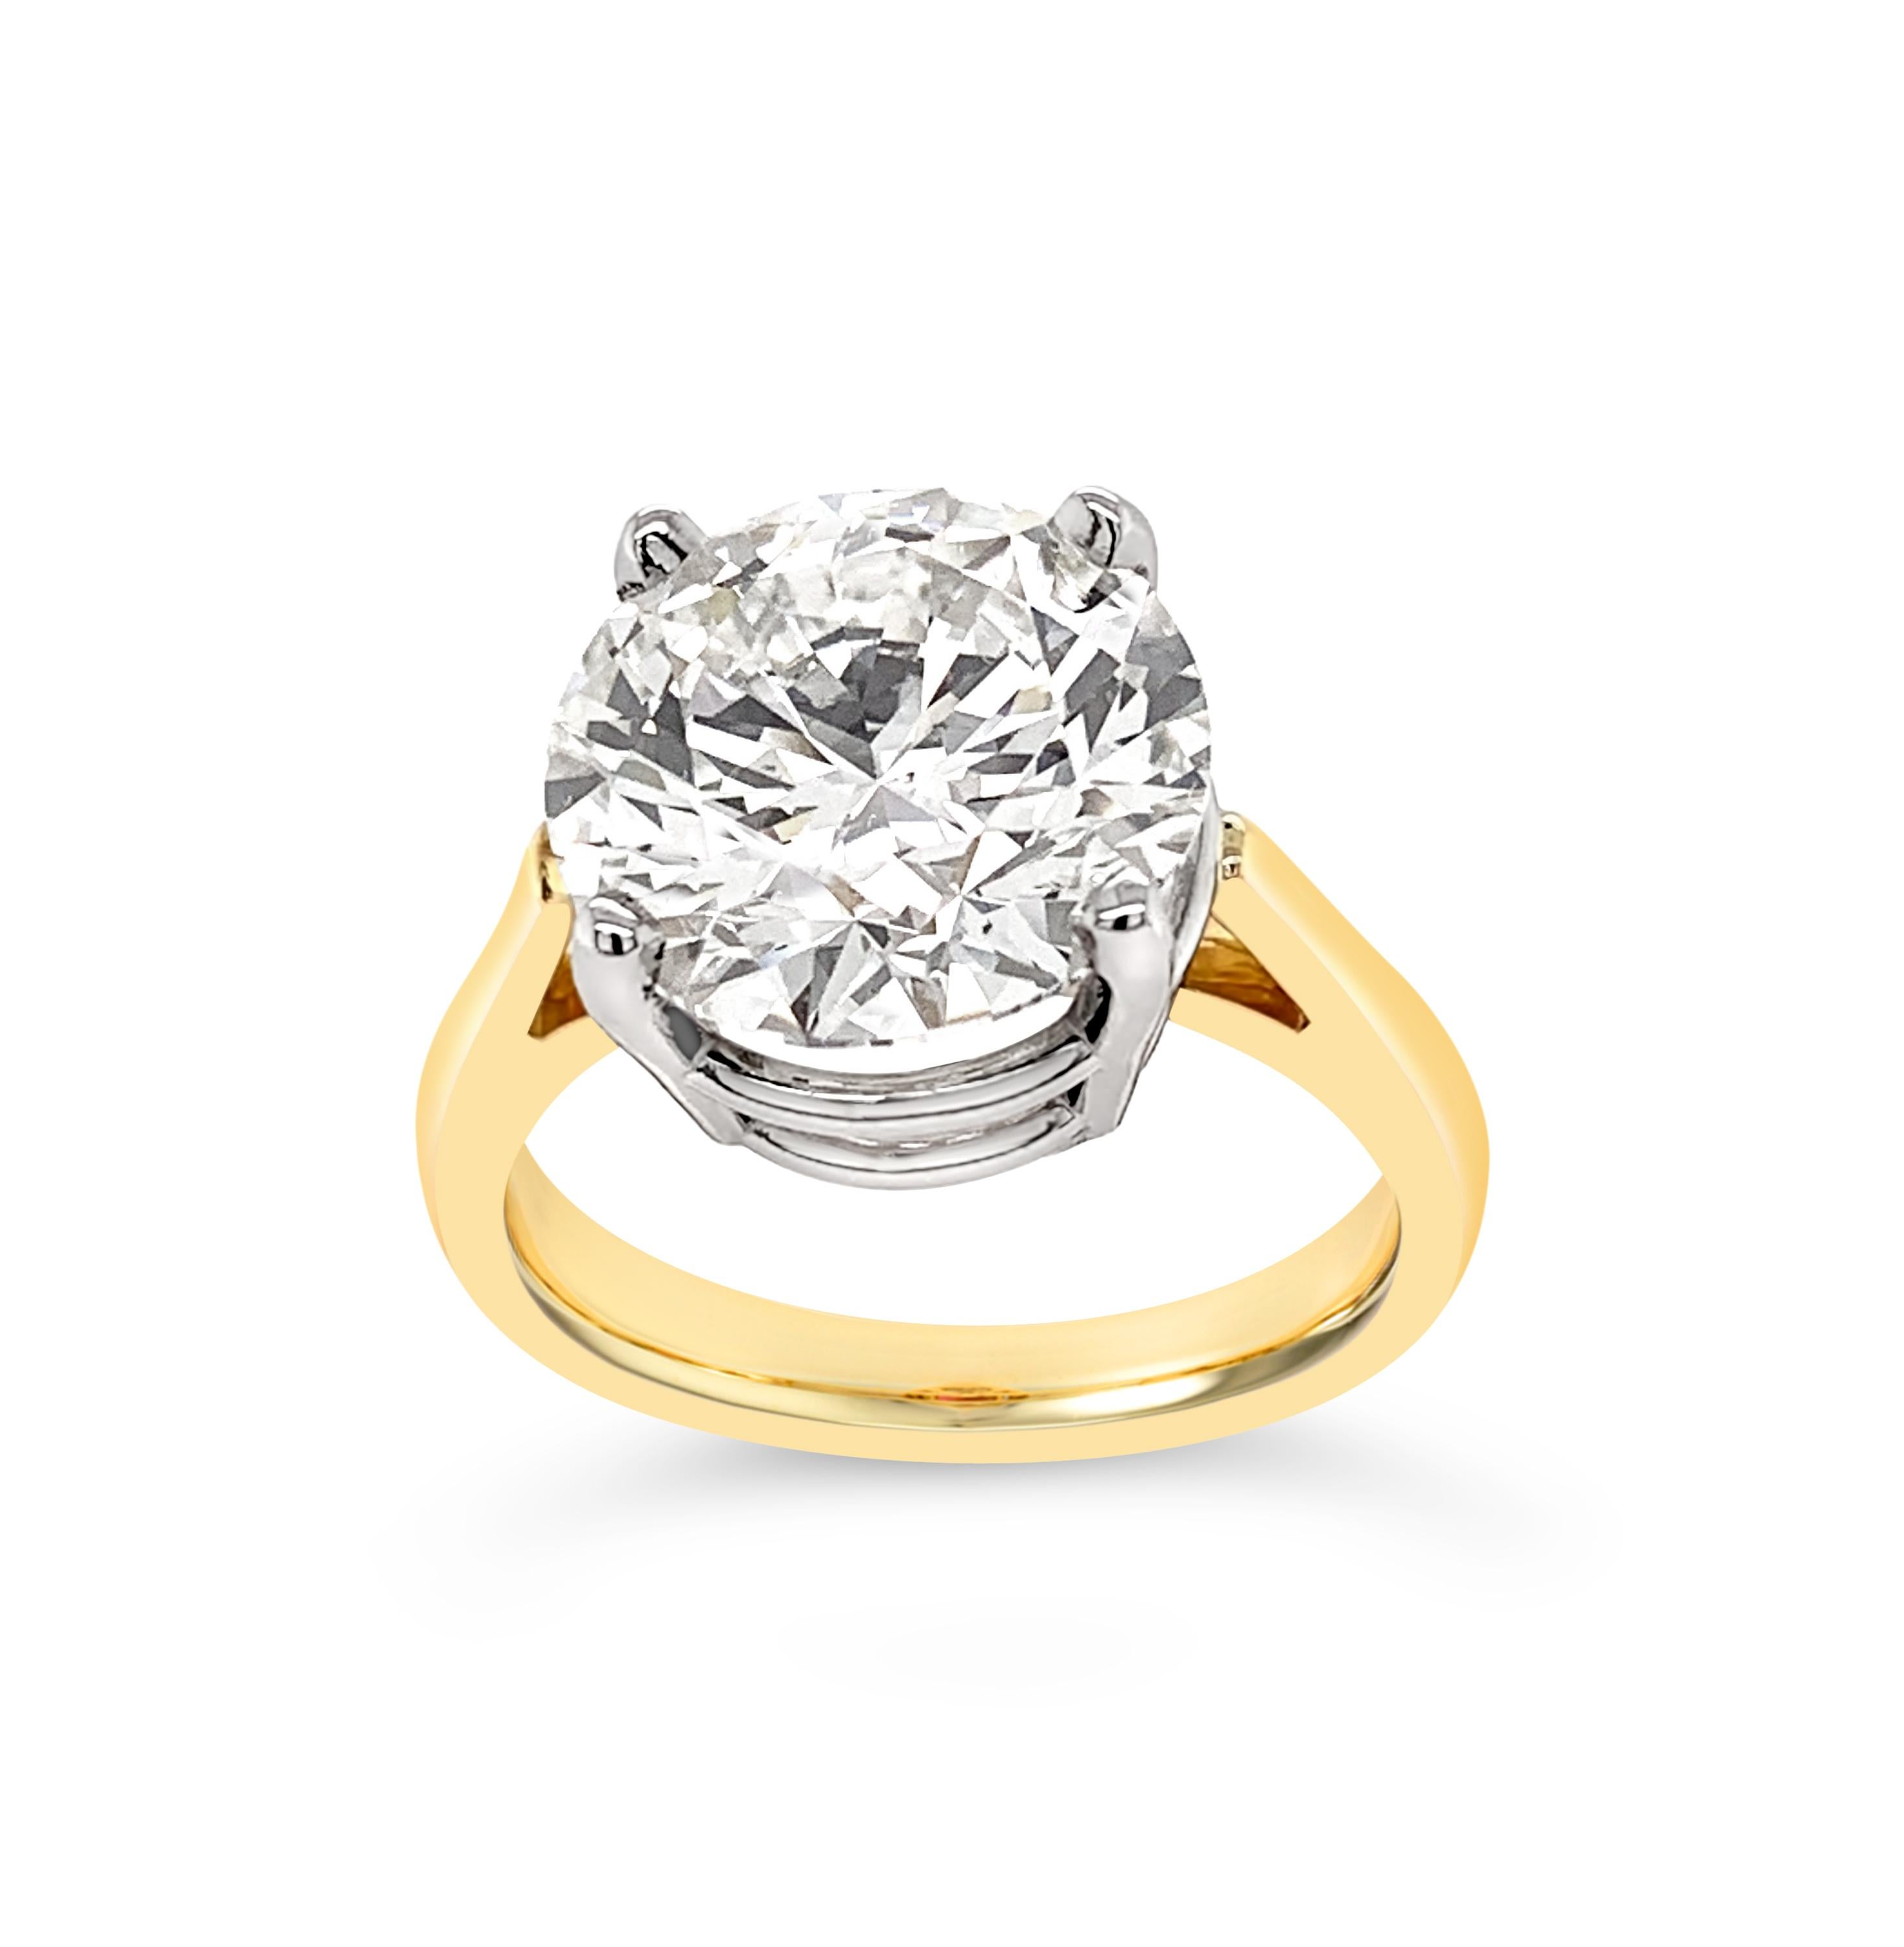 Atemberaubende 5,11 Karat Diamant in 18K Gelbgold Ring mit Platin-Montage gesetzt.  Der Diamant ist GIA-zertifiziert als 